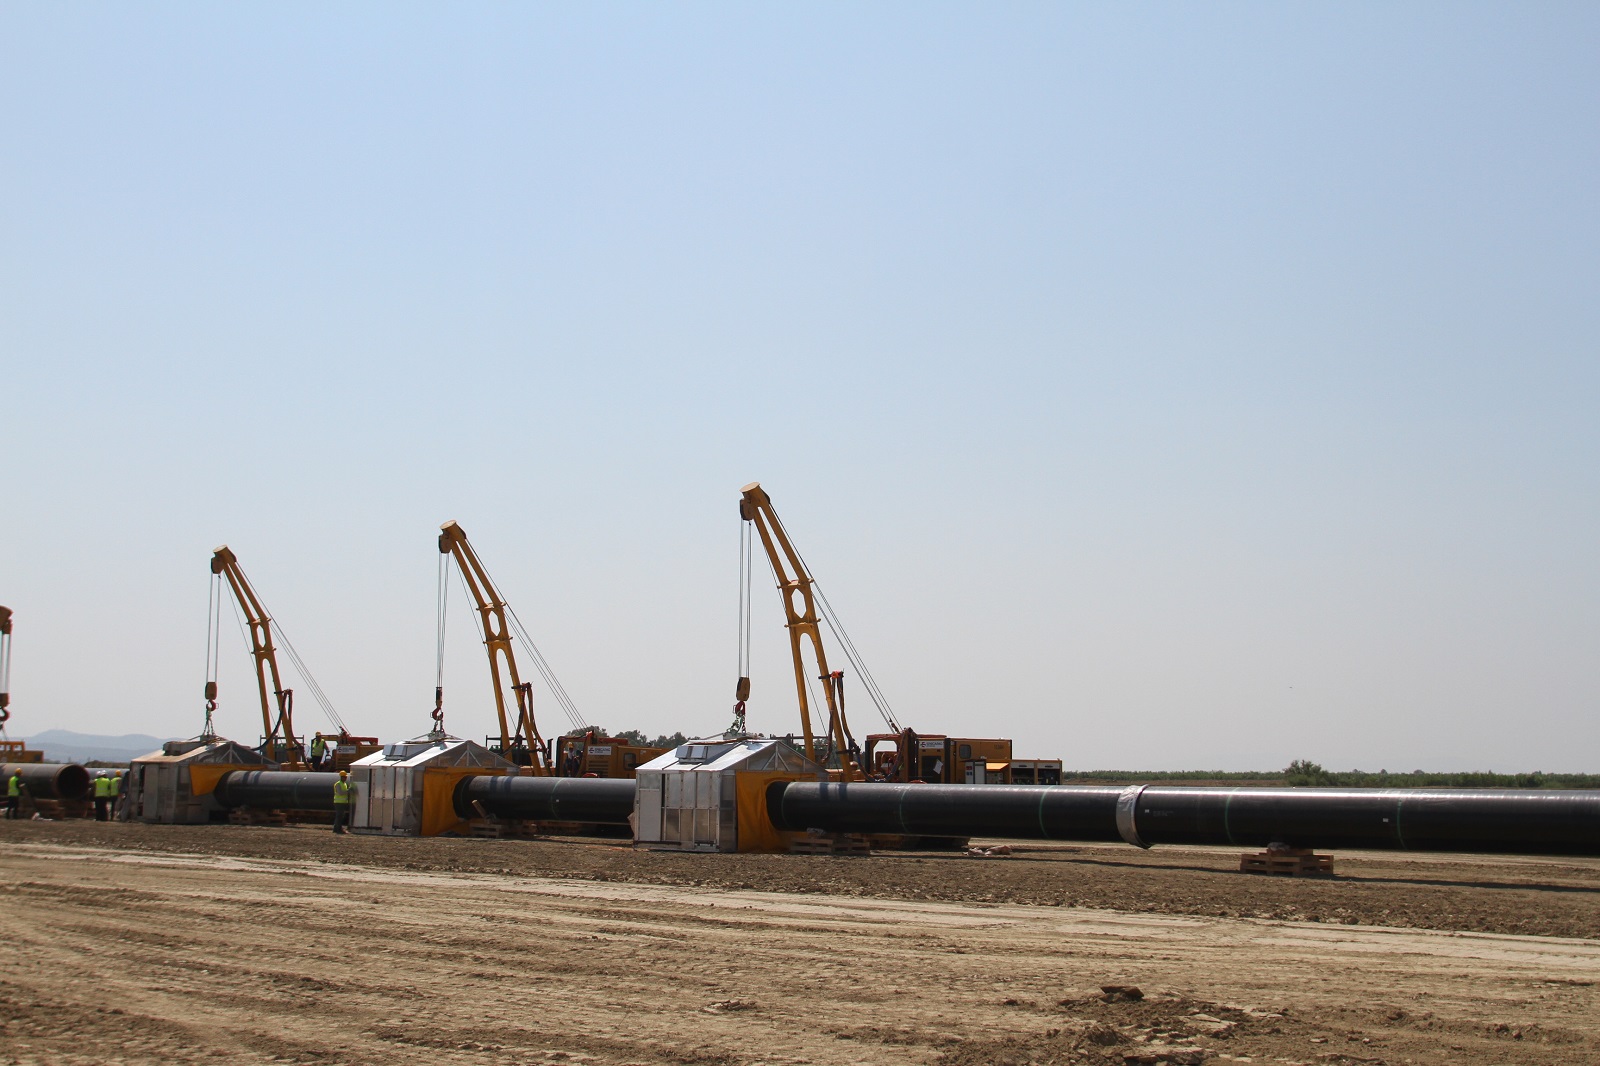 TAP LANCERA’ UNA PROCEDURA INVITION TO TENDER (ITT) PER ACQUISTARE GAS - Pipeline News - tap ag - News